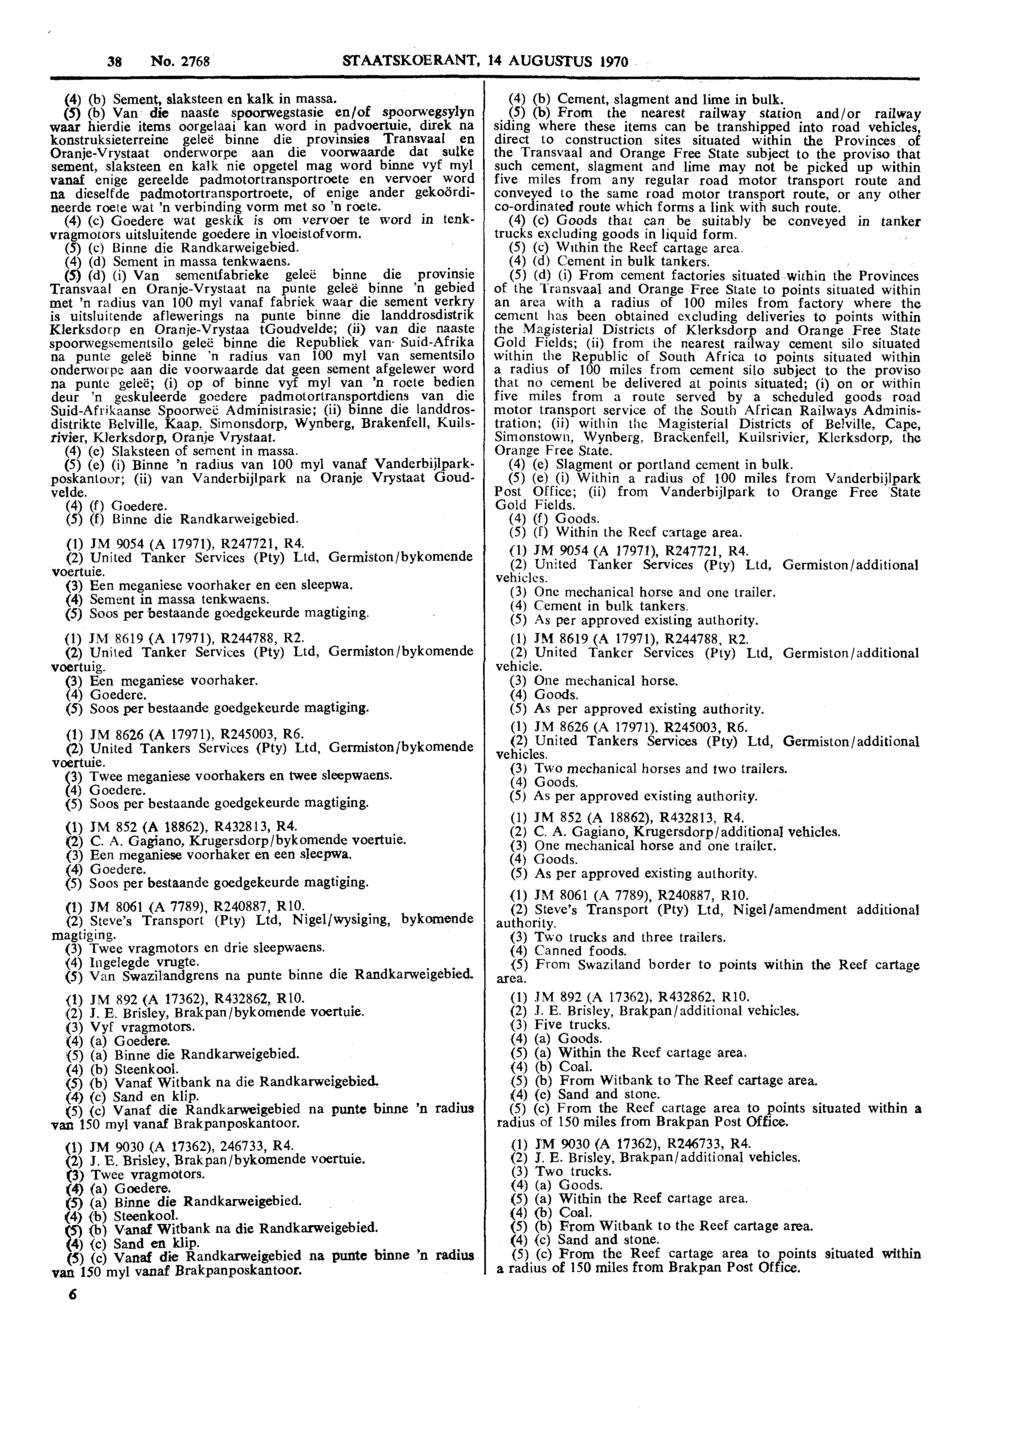 38 No. 2768 STAATSKOERANT, 14 AUGUSTUS 1970 (4) (b) Sement, slaksteen en kalk in massa.